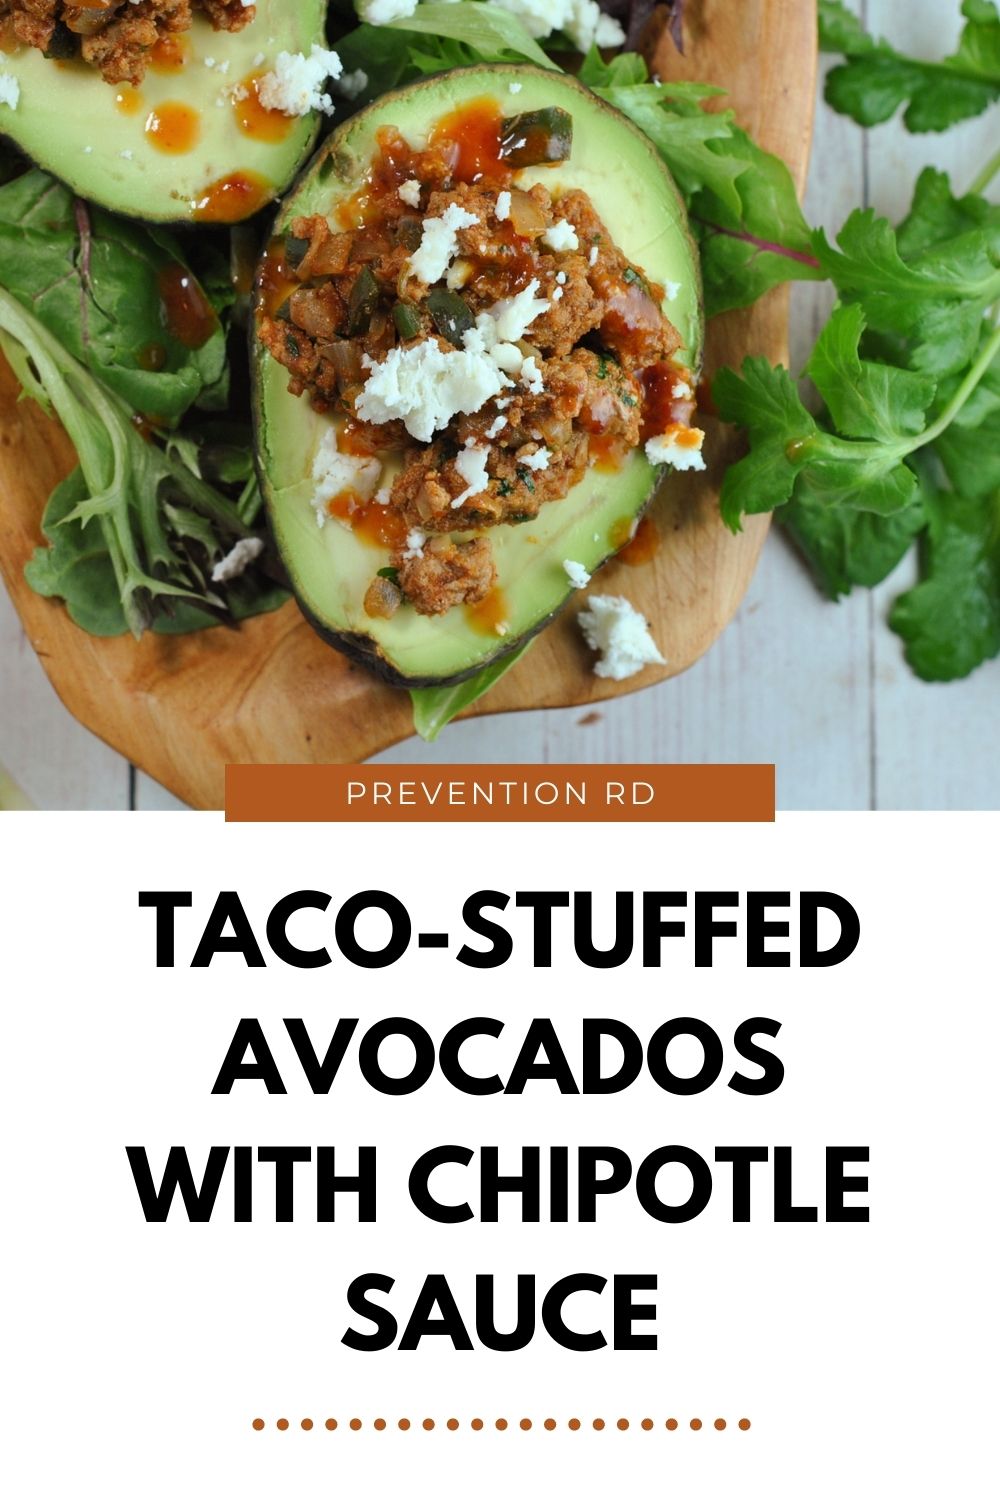 Taco-Stuffed Avocados with Chipotle Sauce via @preventionrd